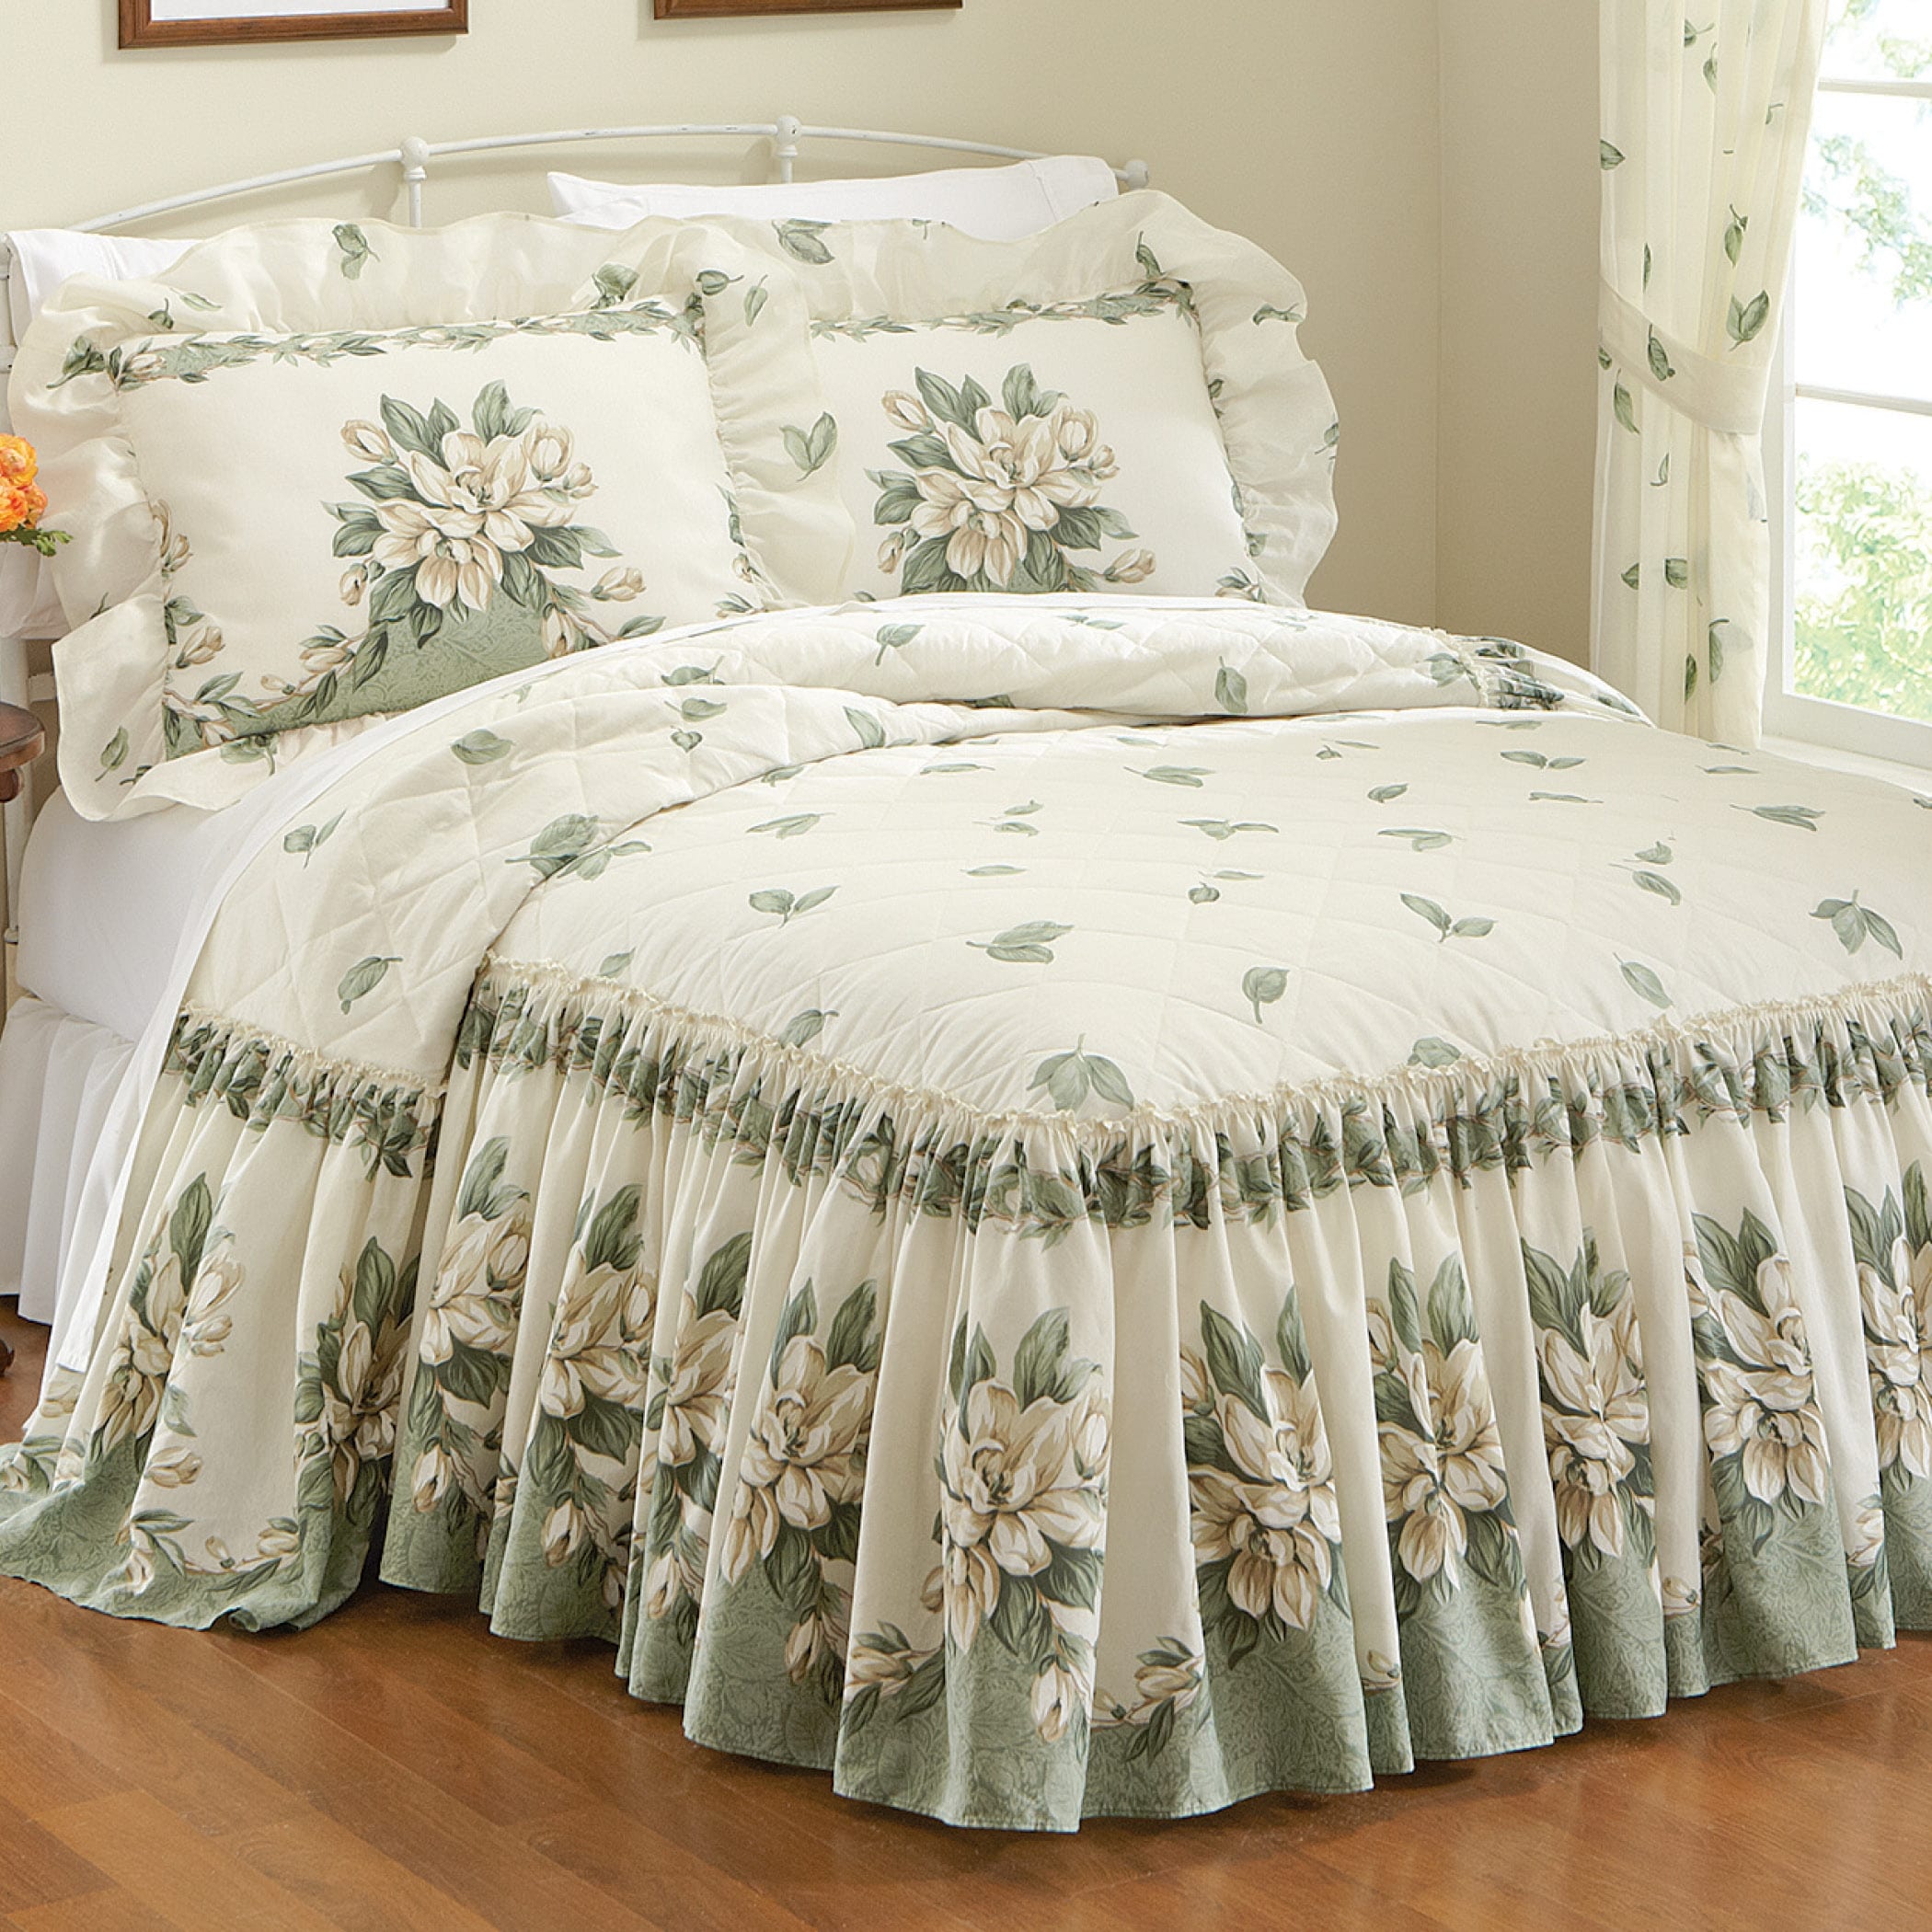 Floral Ruffle Magnolia Garden Bedspread - Bed Bath & Beyond - 36715383